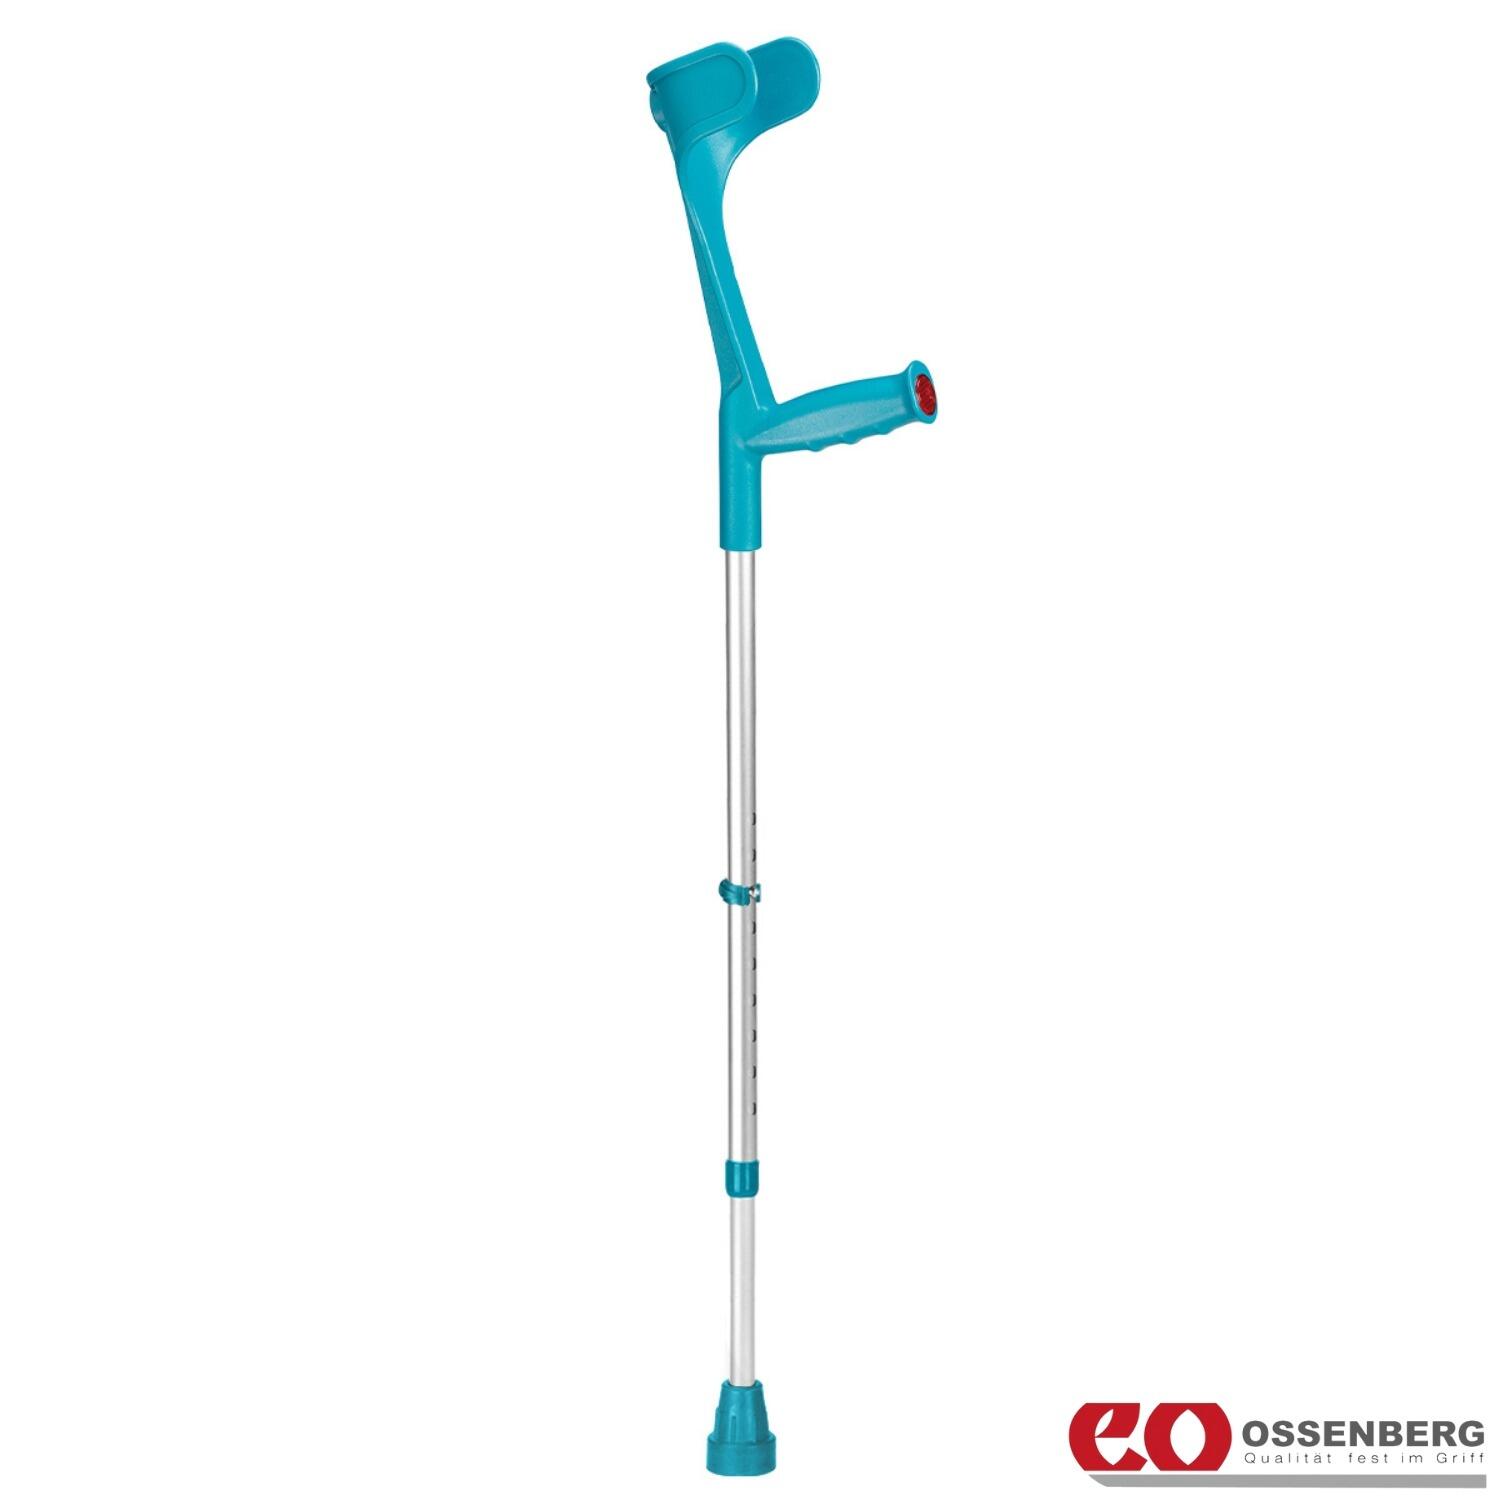 Ossenberg-Classic-Open-Cuff-Crutch-Turquoise